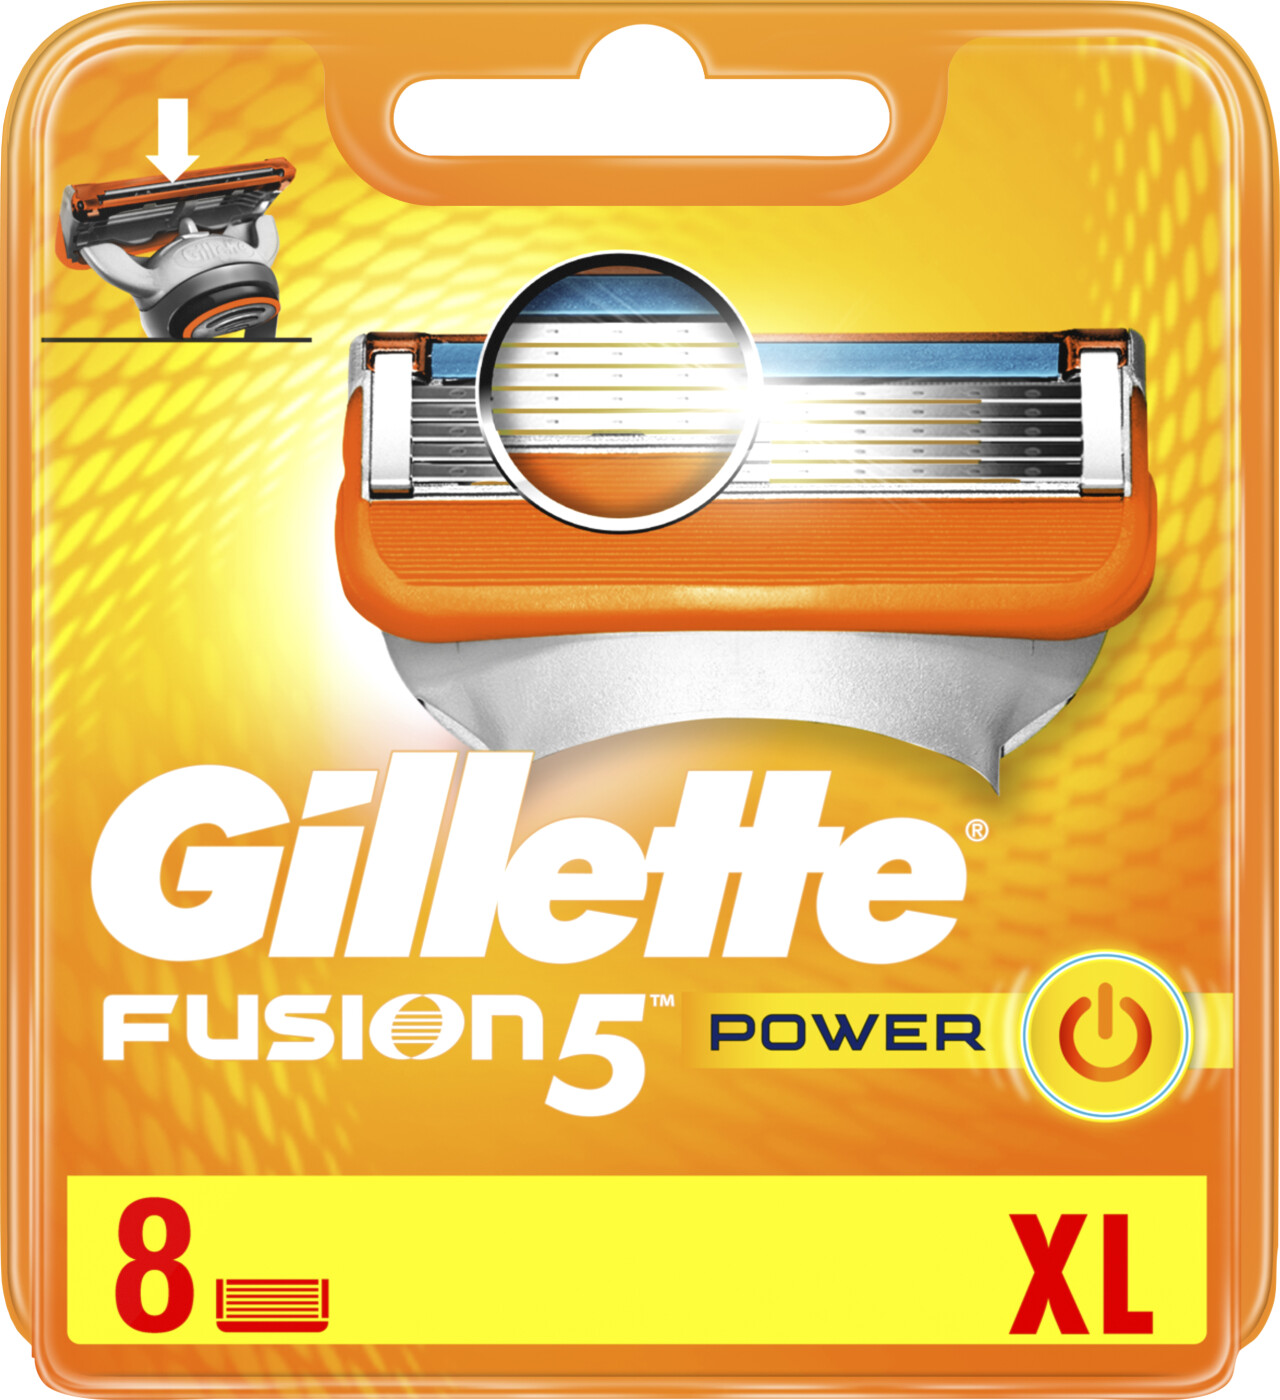 Billede af Gillette - Fusion 5 Power Barberblade Xl Pakke - 8-pak